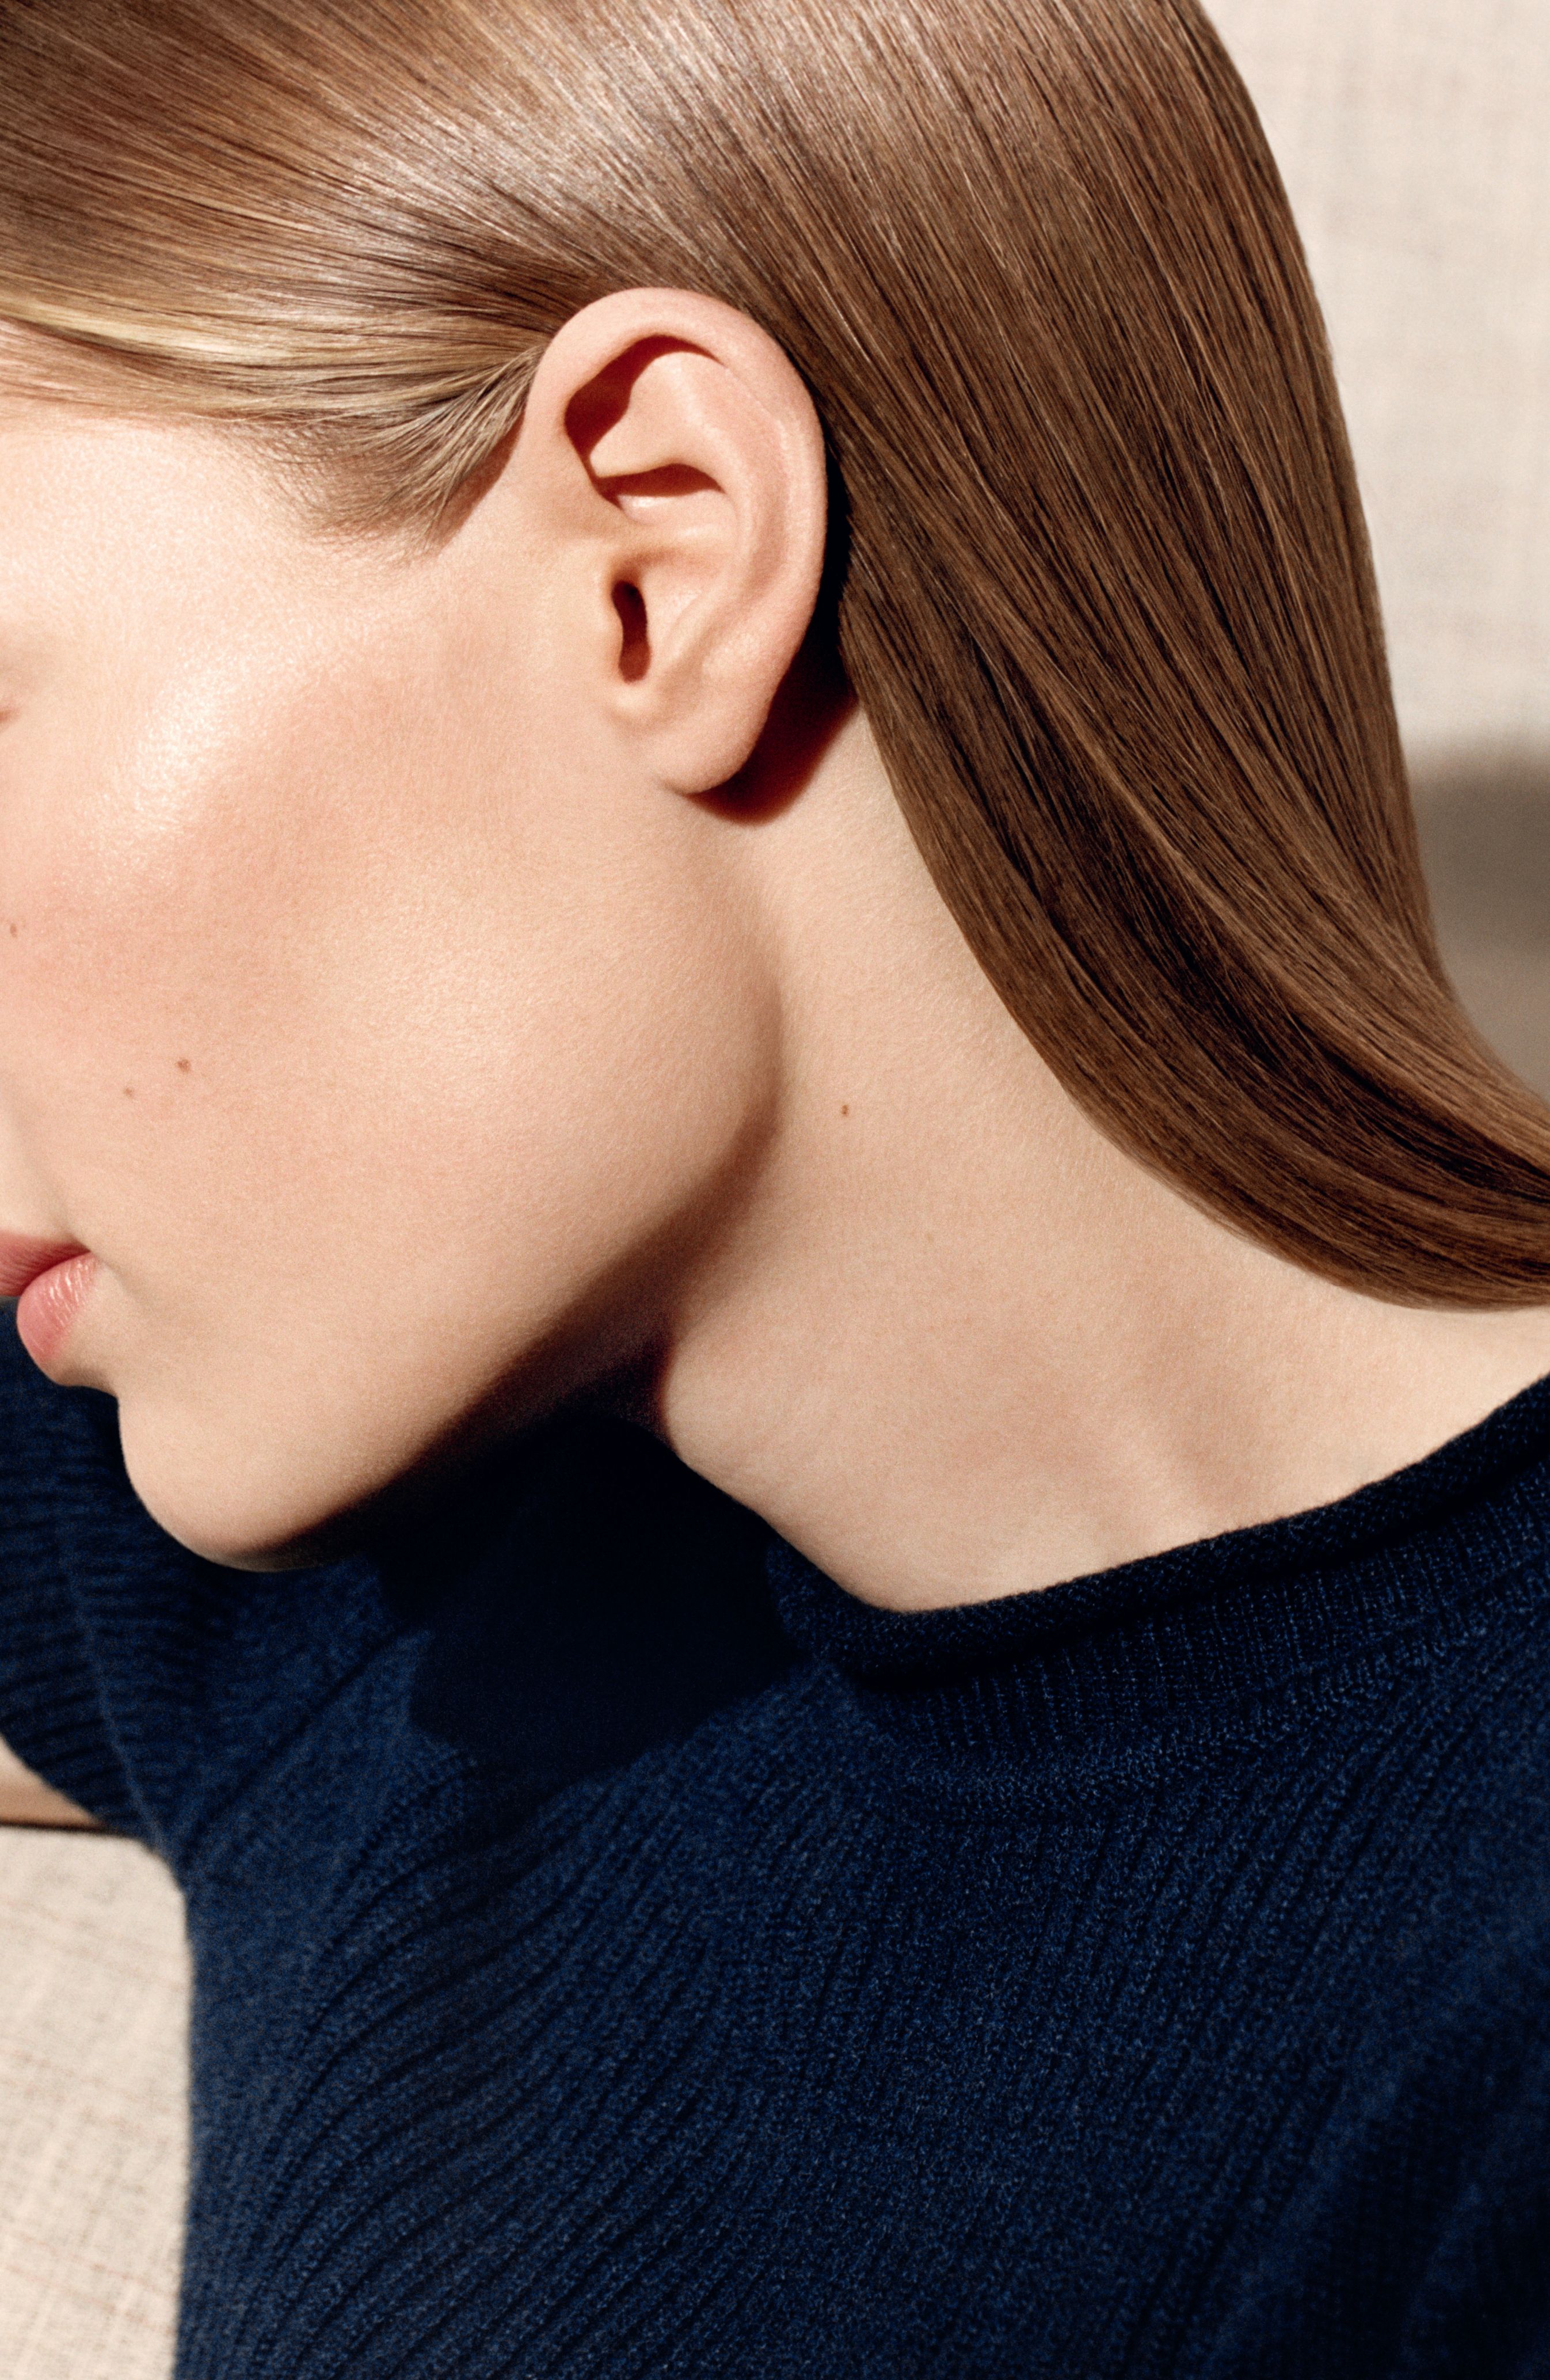 Ra mắt bộ mỹ phẩm cho làn da, Hermès tập trung vào ngành hàng làm đẹp - Ảnh 2